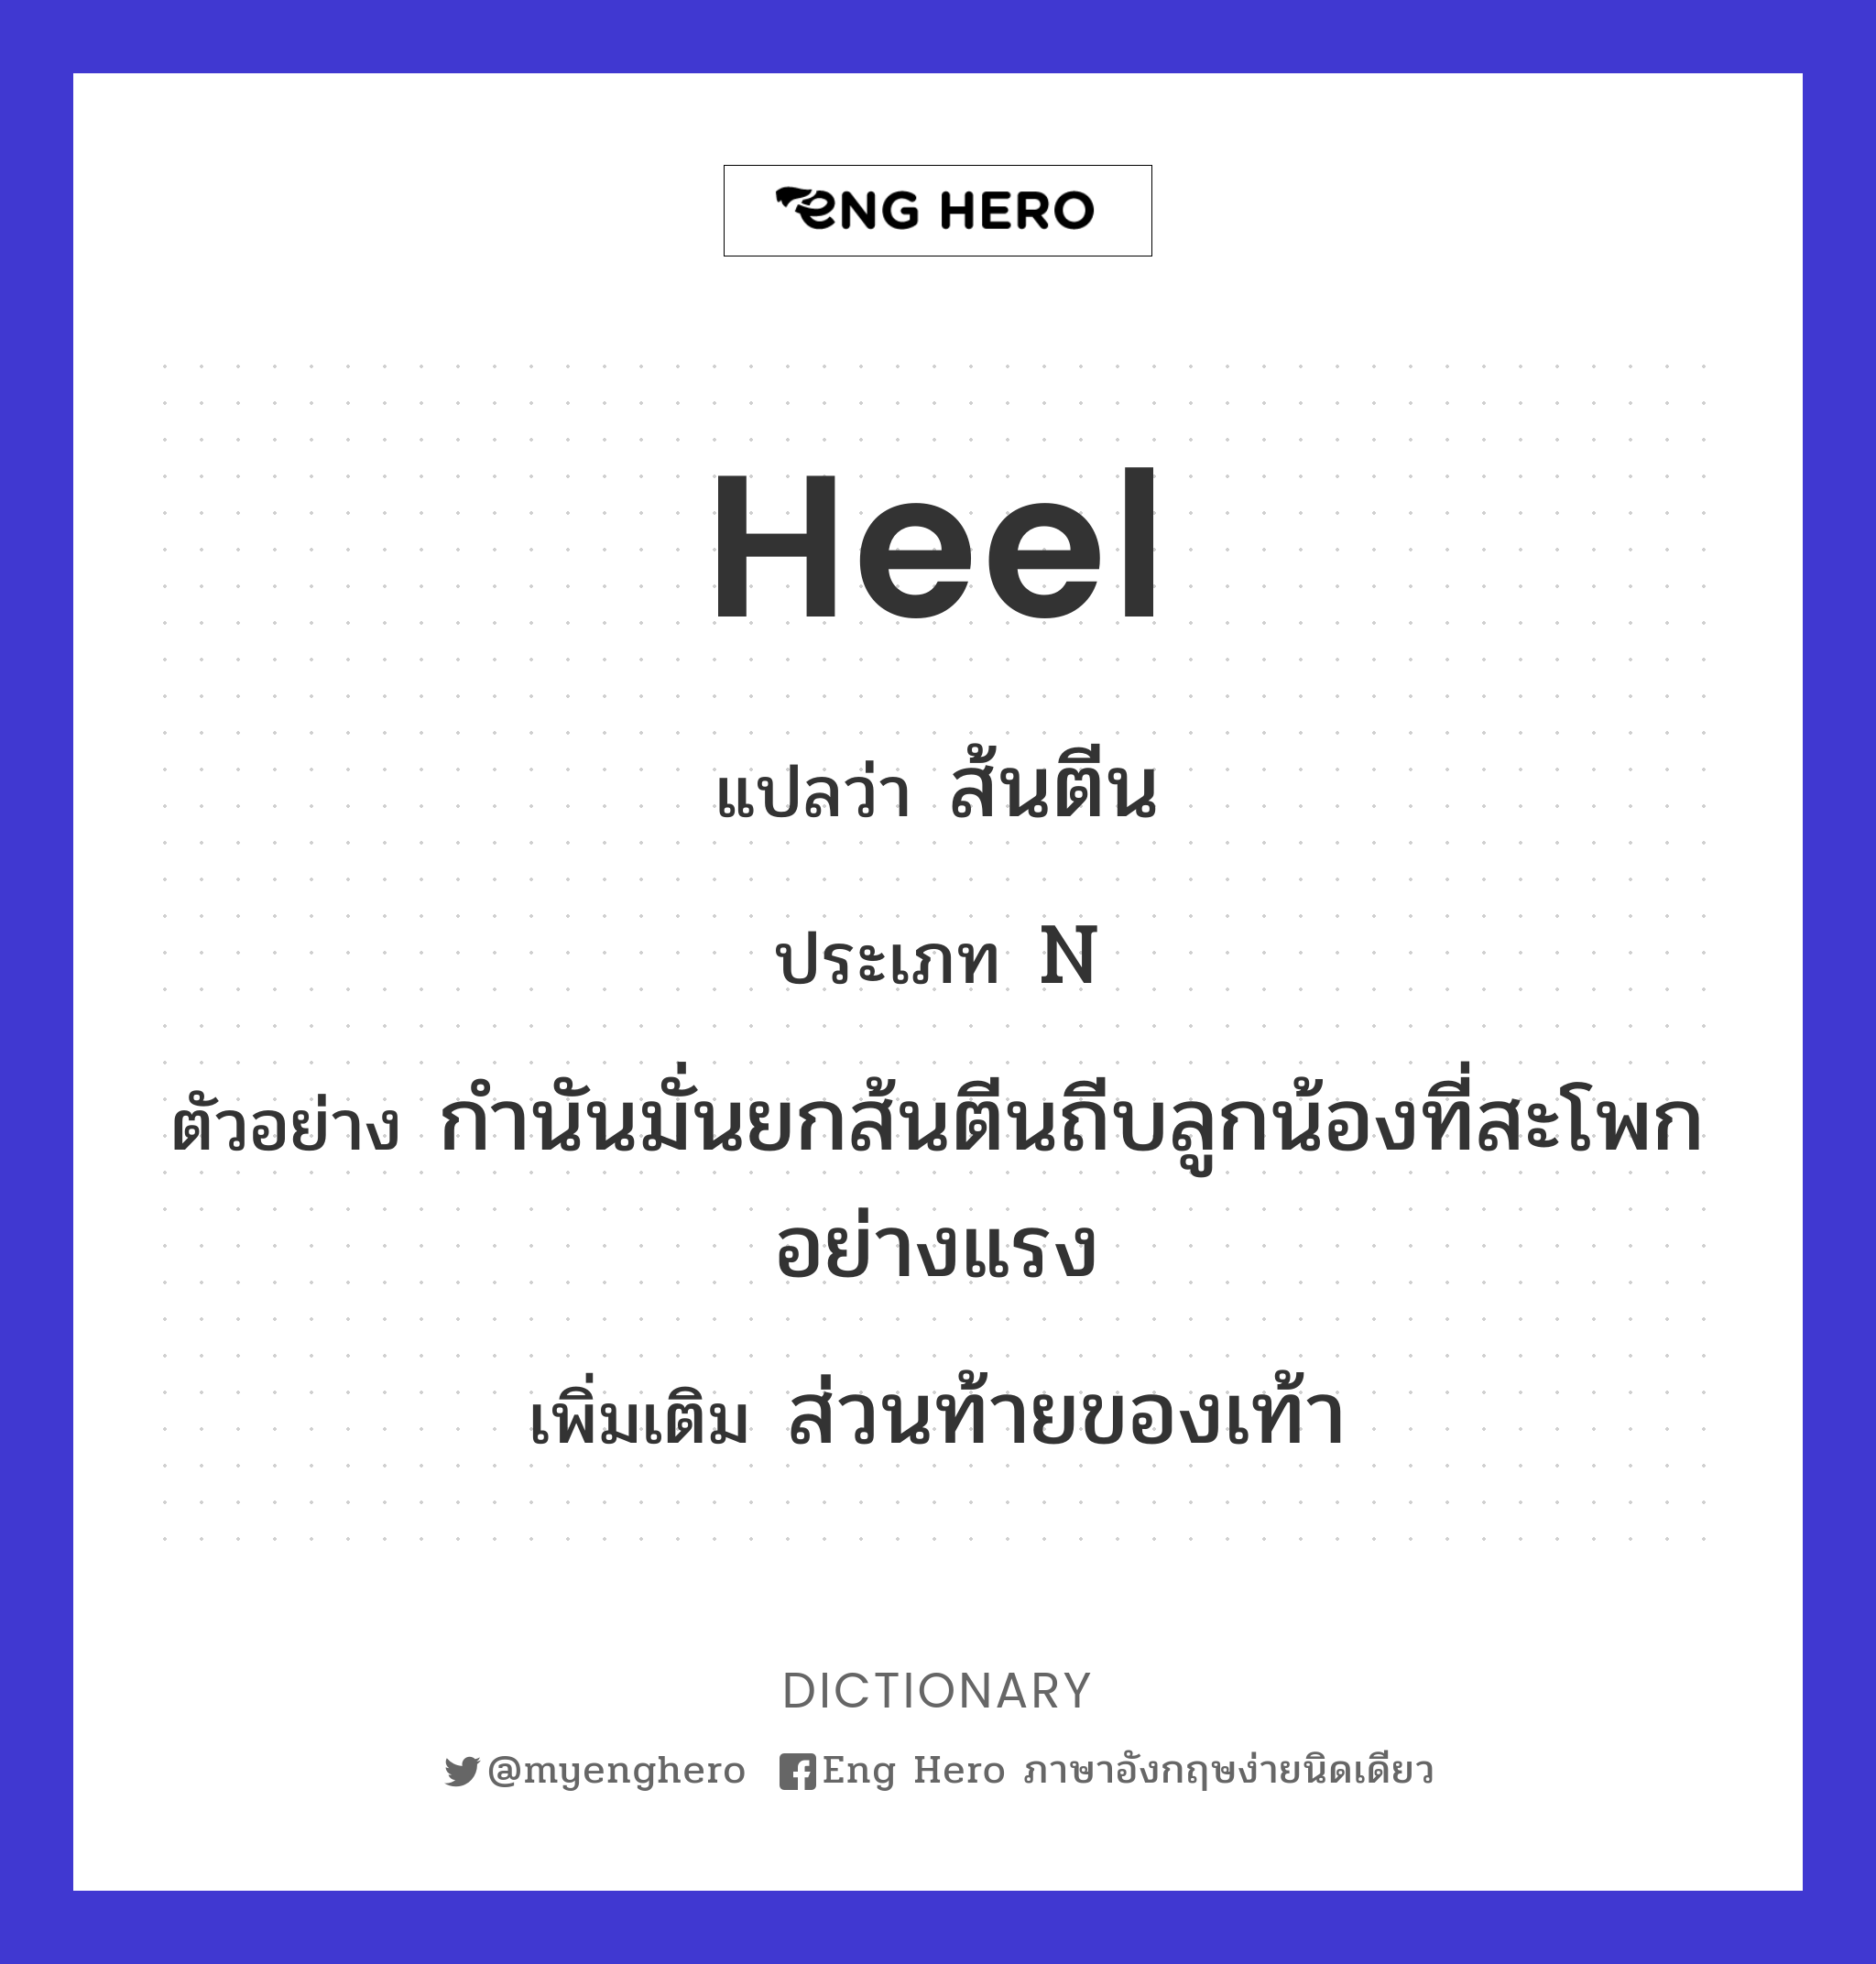 heel